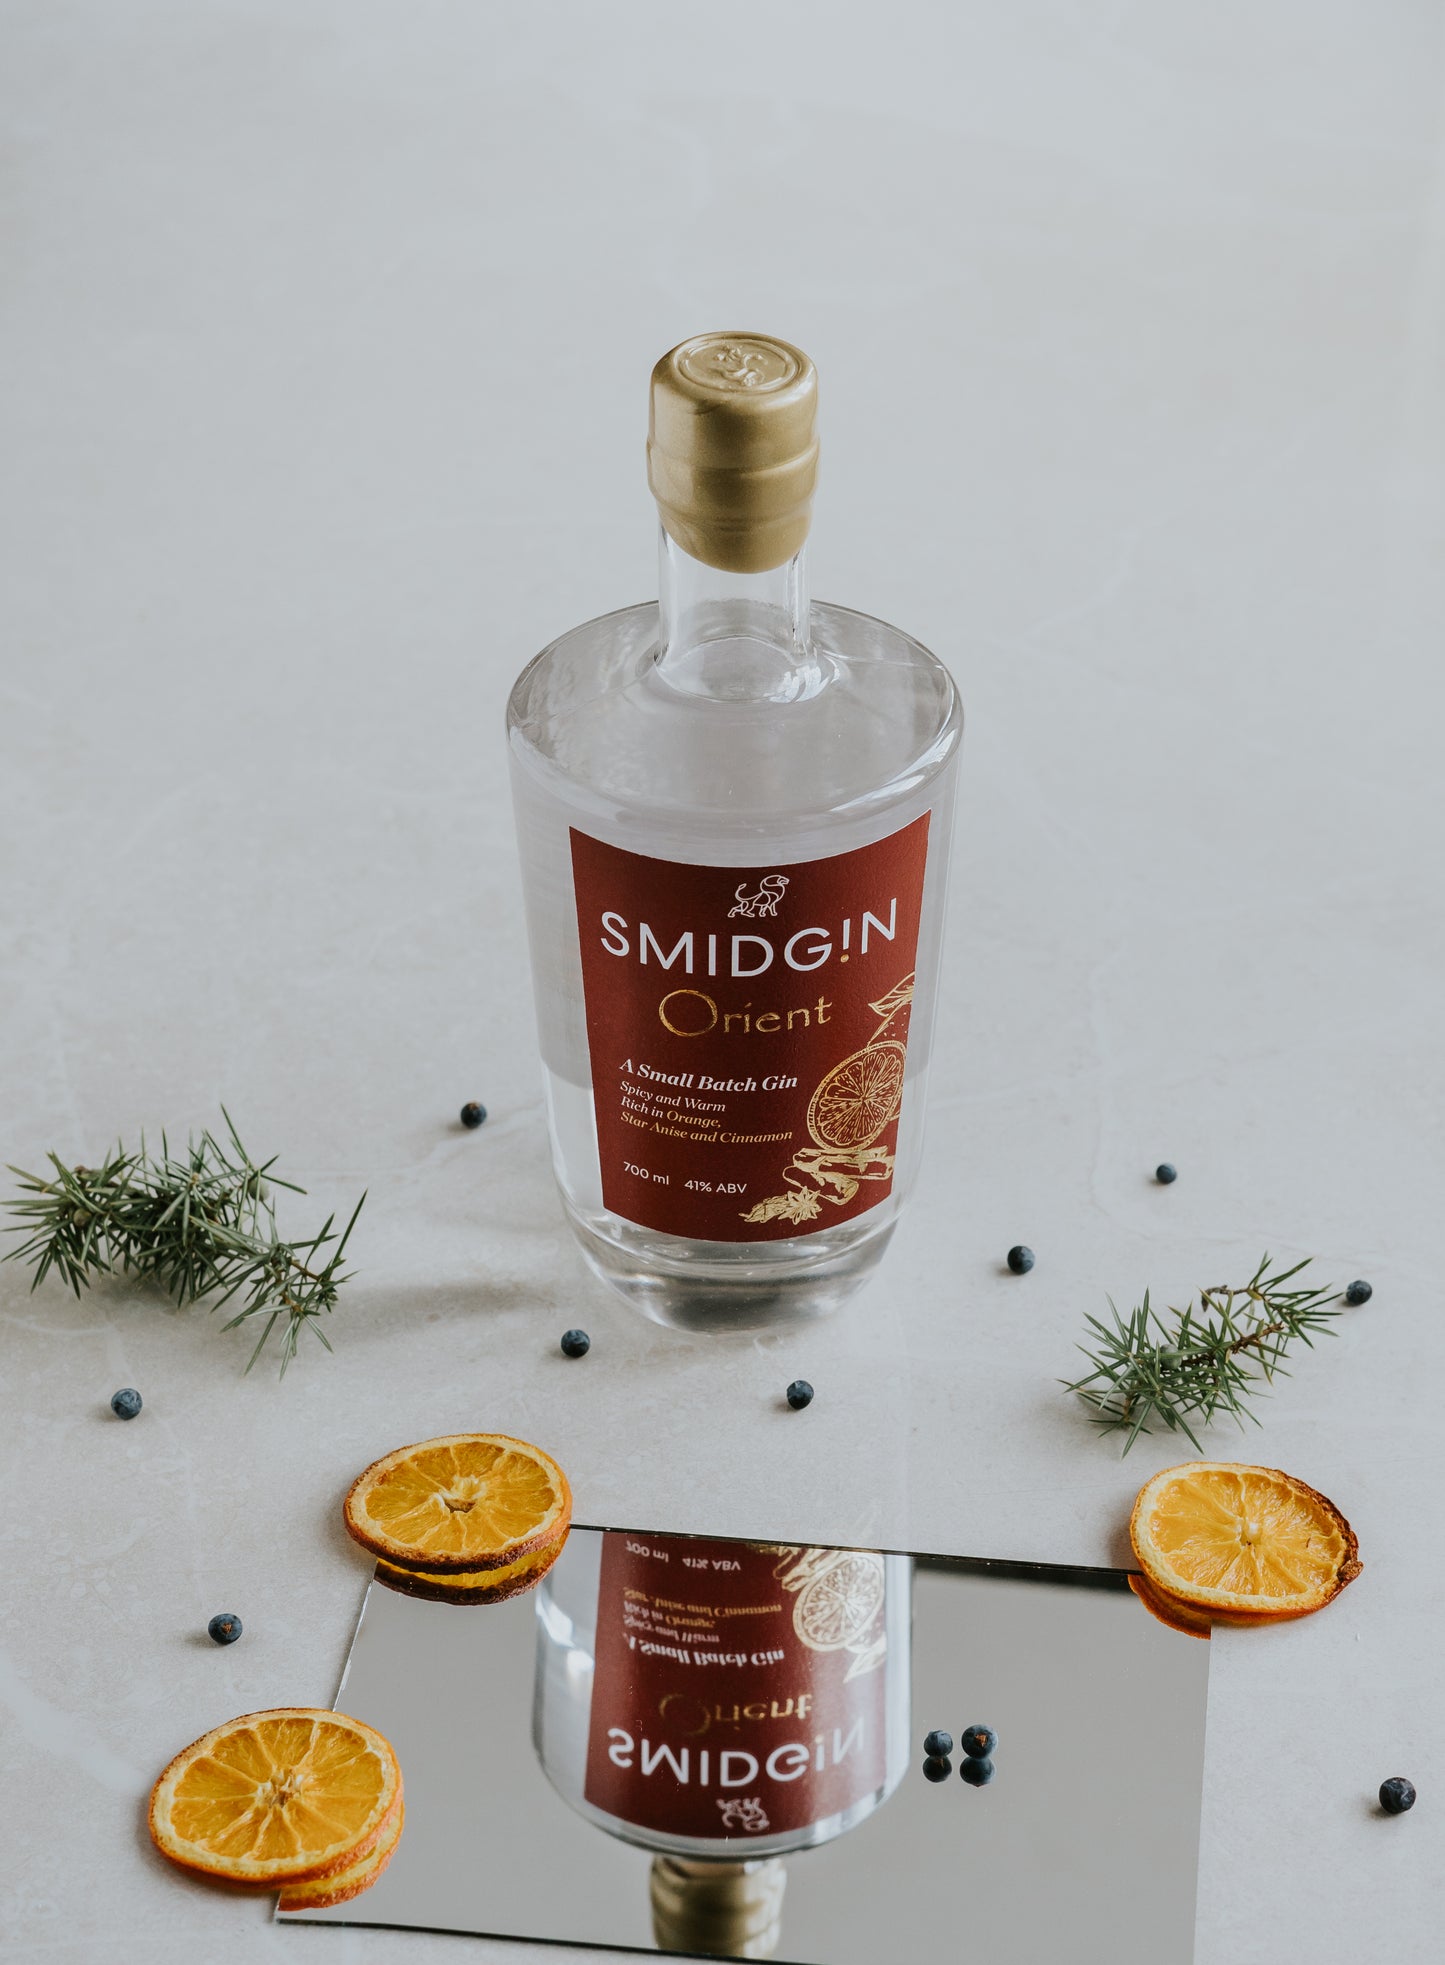 Smidgin Orient Gin, 700ml